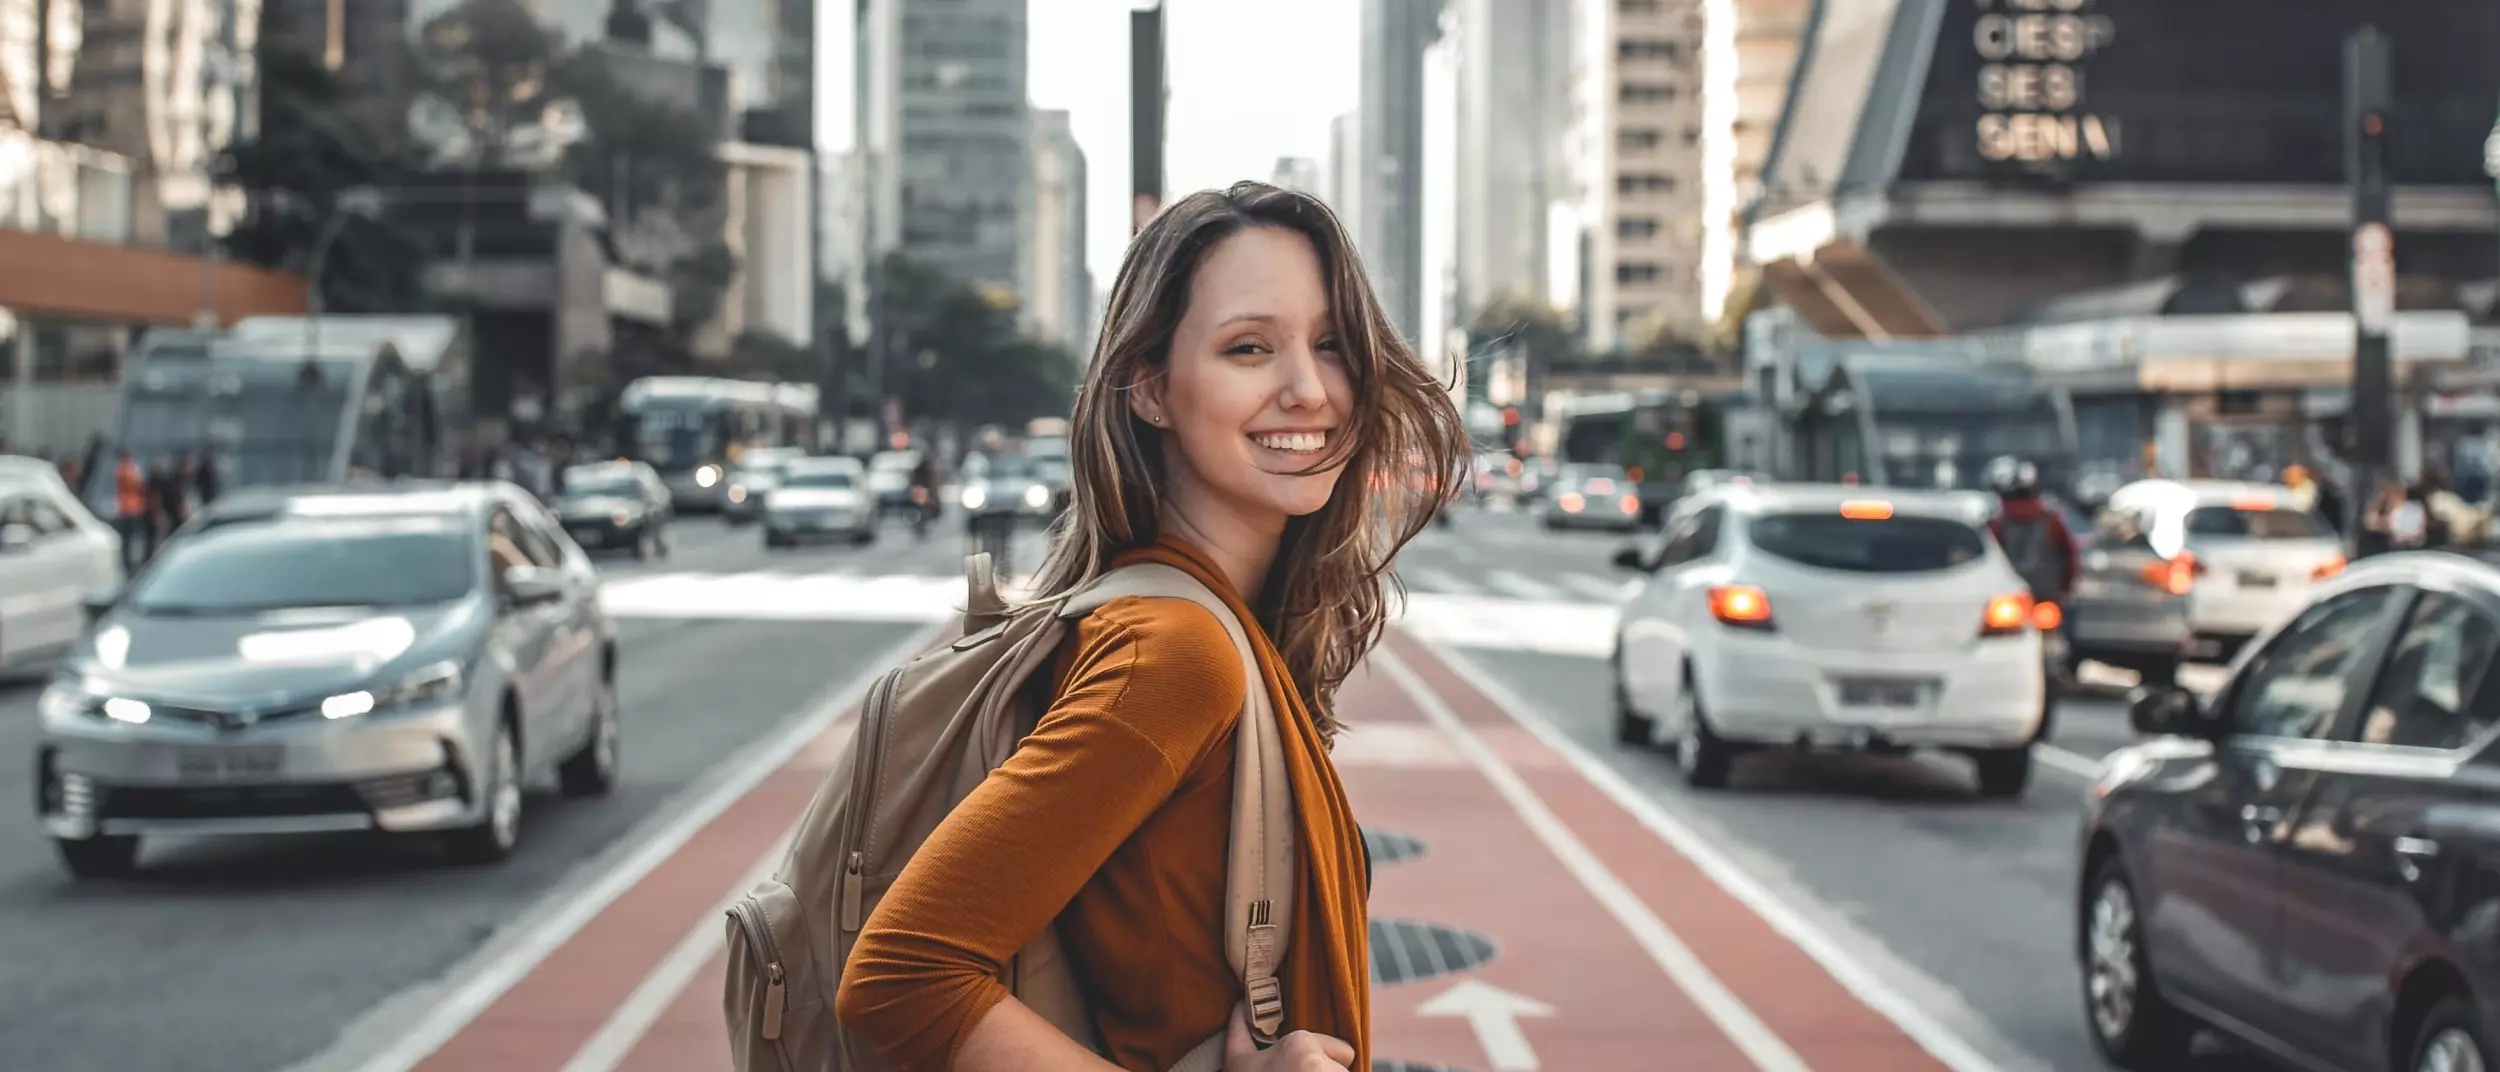 Eine Junge Frau steht auf einer befahrenen Straße in einer Großstadt und grinst in die Kamera